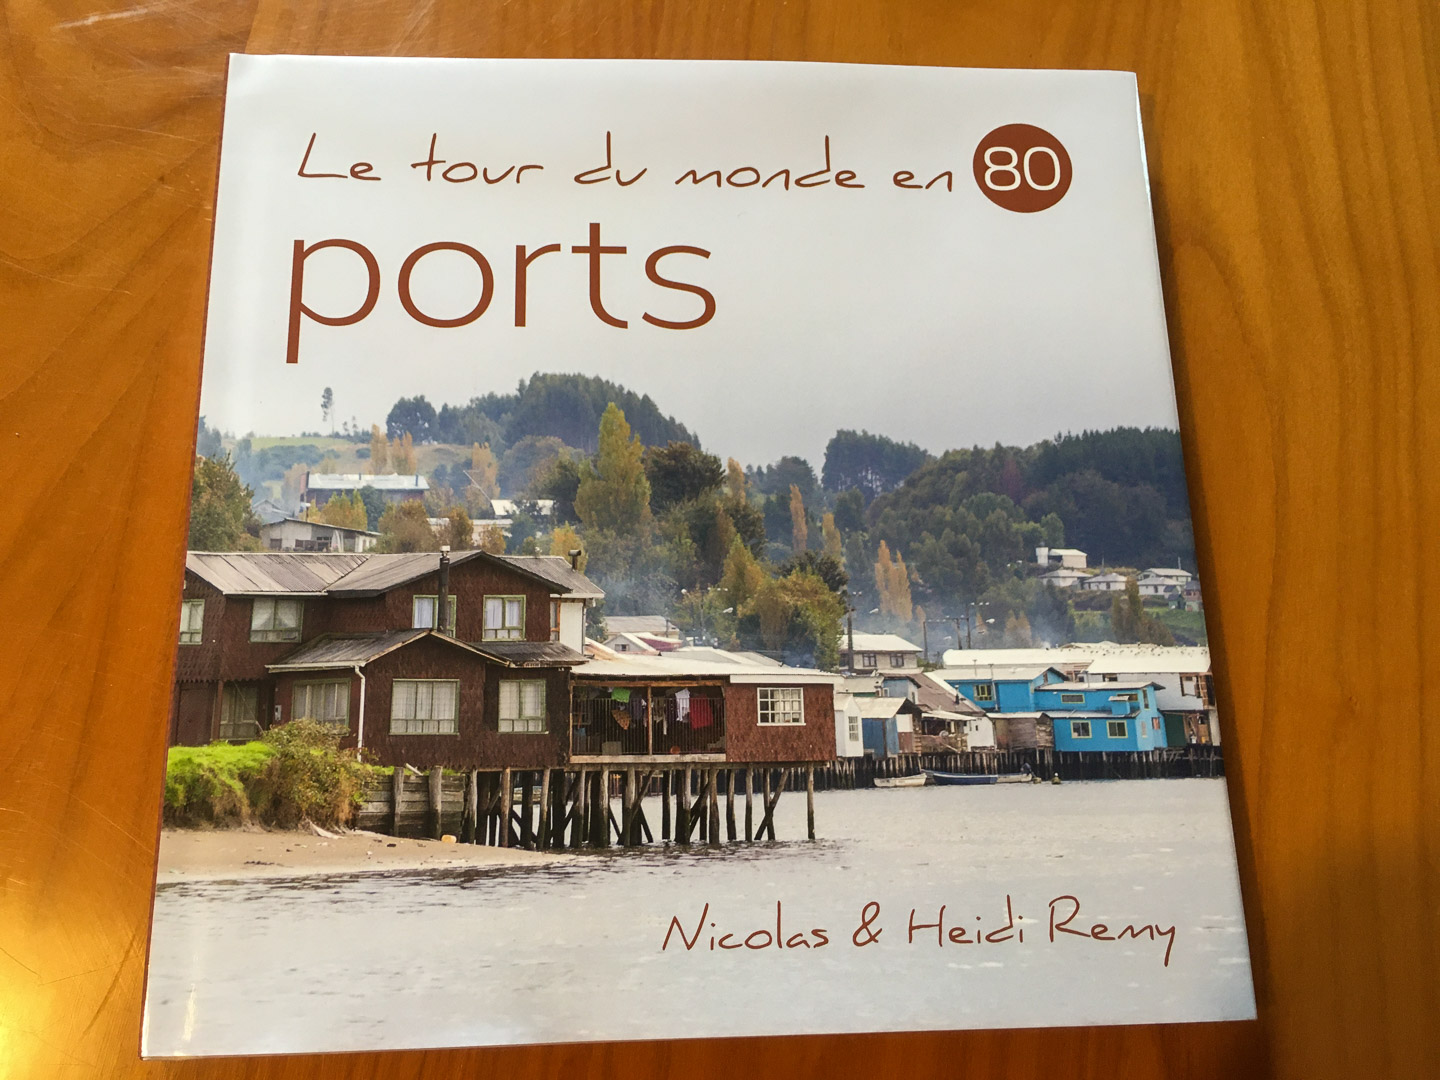 Notre deuxième beau-livre photo, Le tour du monde en 80 ports, est désormais disponible